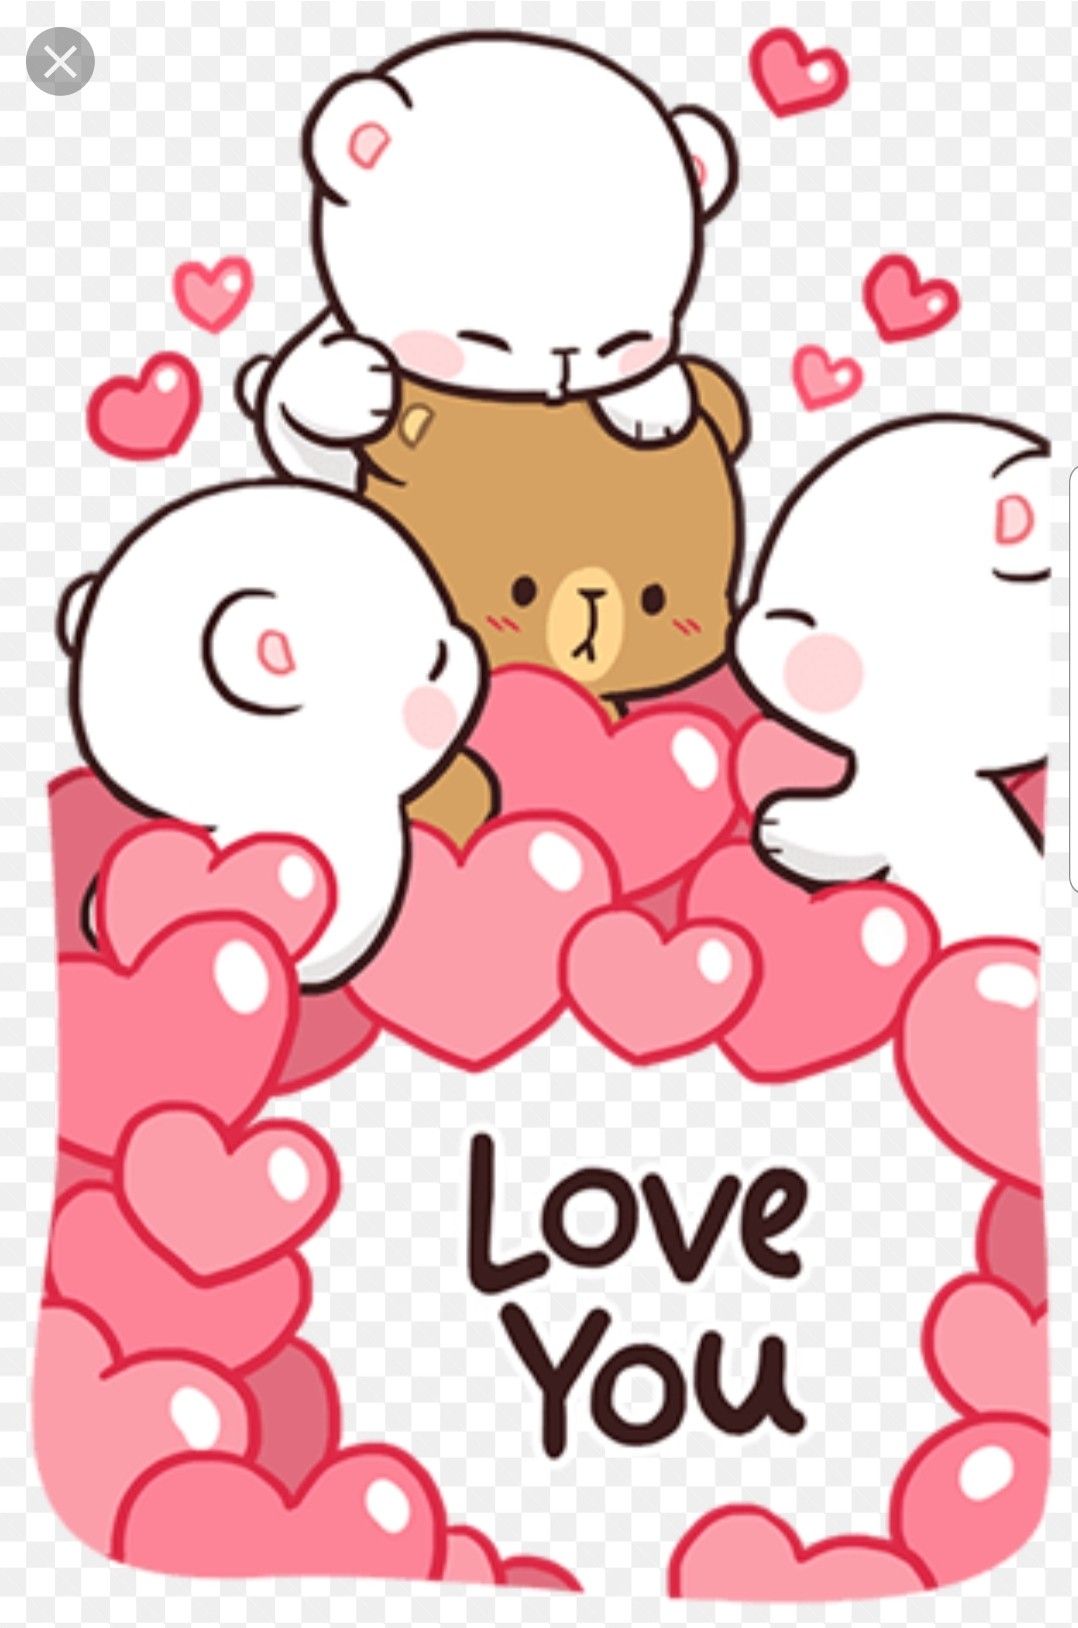 Love you. Cute bear drawings, Cute love gif, Cute cartoon wallpaper